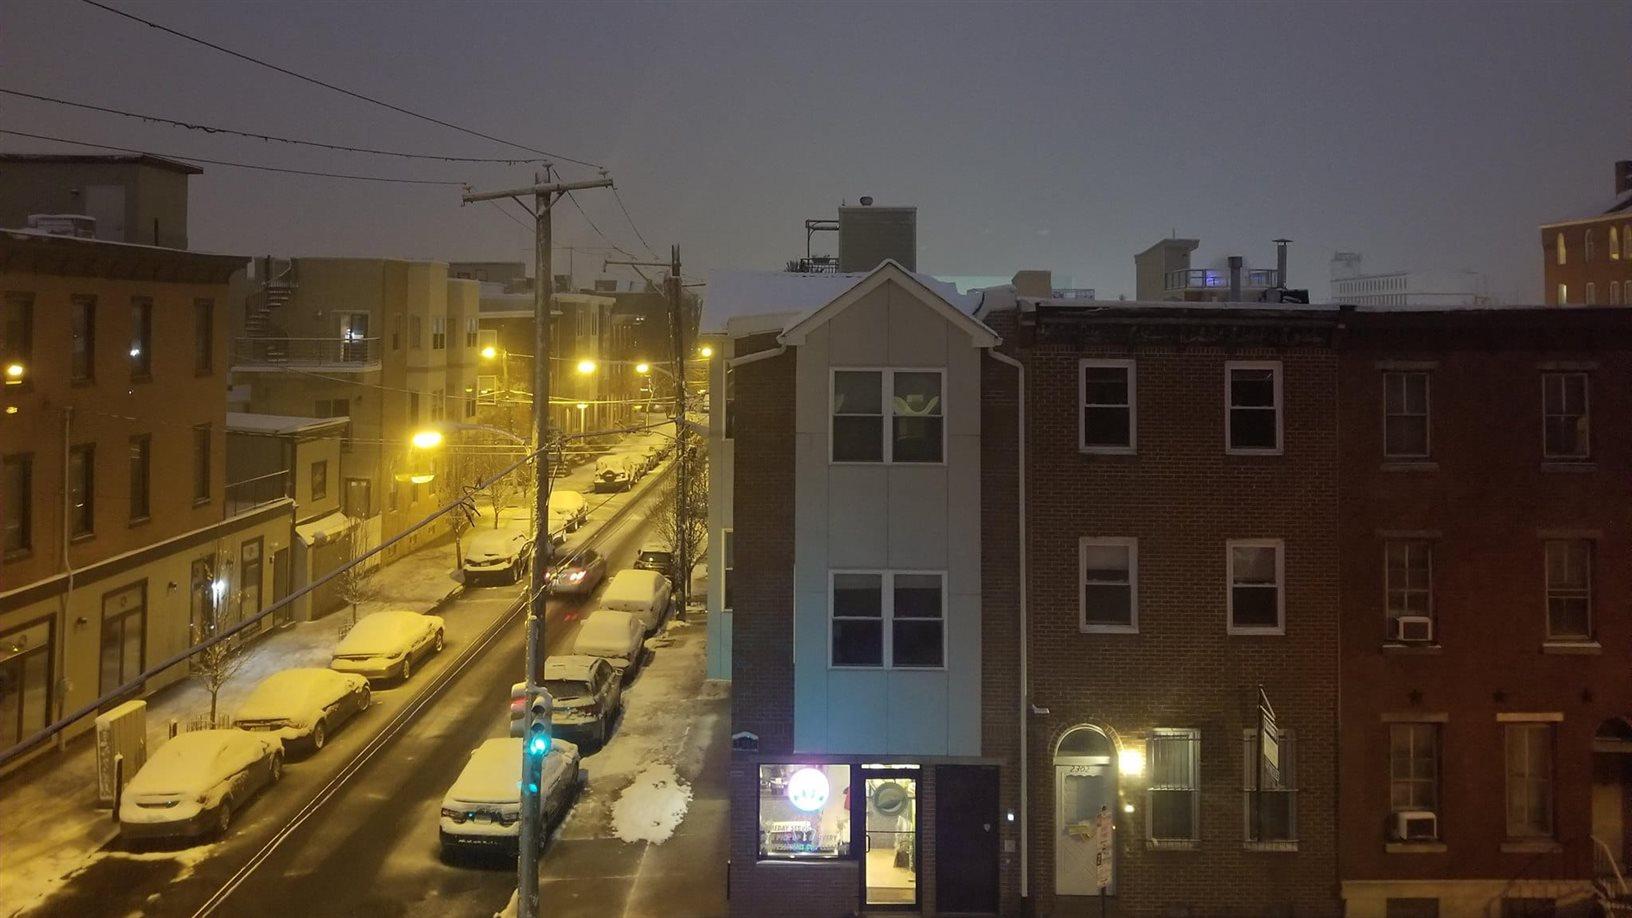 Philadelphia in winter, snow on ground.